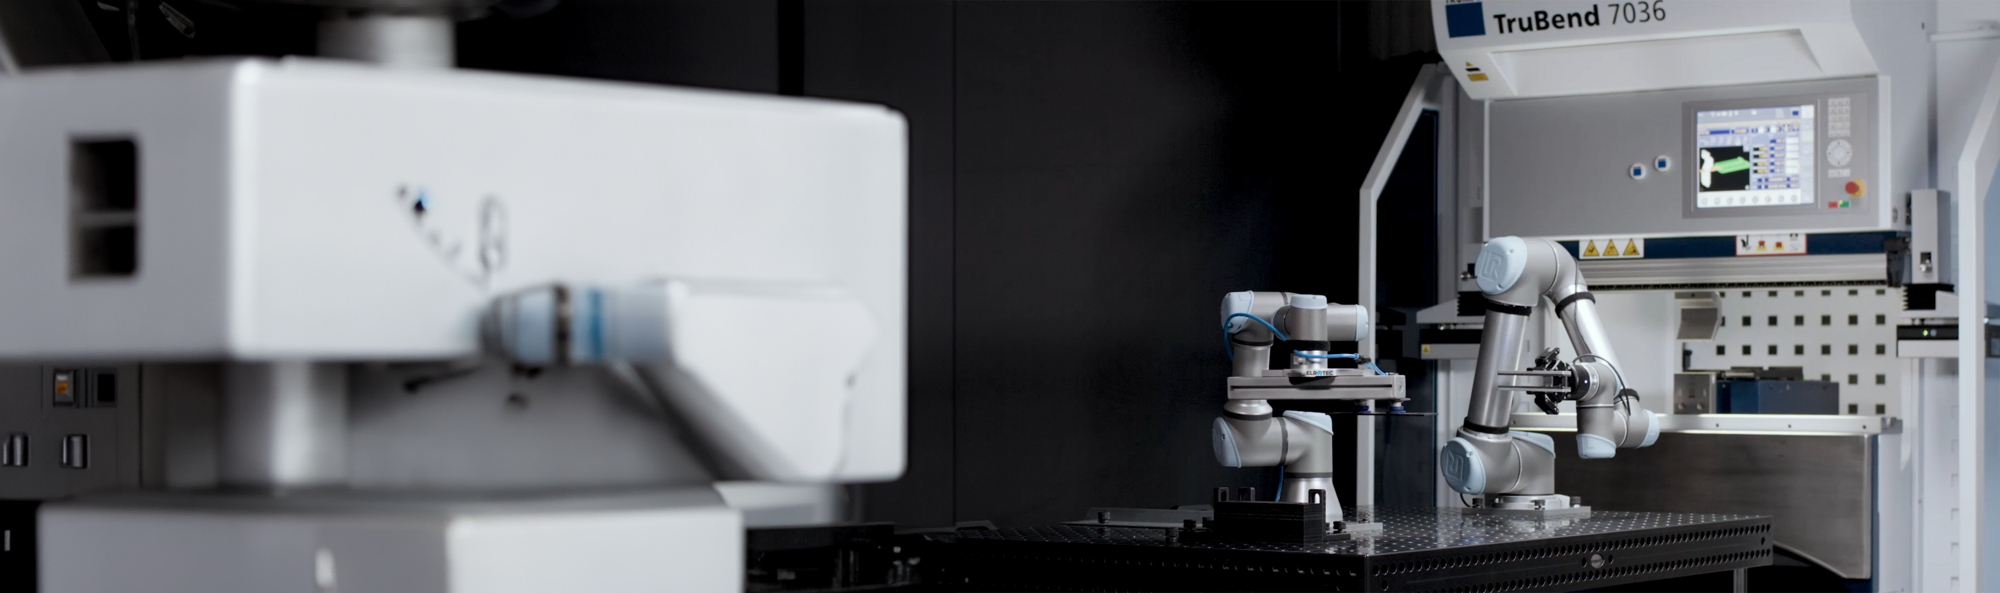 Das Bild zeigt einen modernen Arbeitsbereich mit Industrierobotern, im Vordergrund ist ein Roboterarm unscharf zu sehen, während im Hintergrund zwei weitere Roboterarme bei der Bedienung einer Maschine, die als "TruBend 7036" gekennzeichnet ist, fokussiert abgebildet sind.